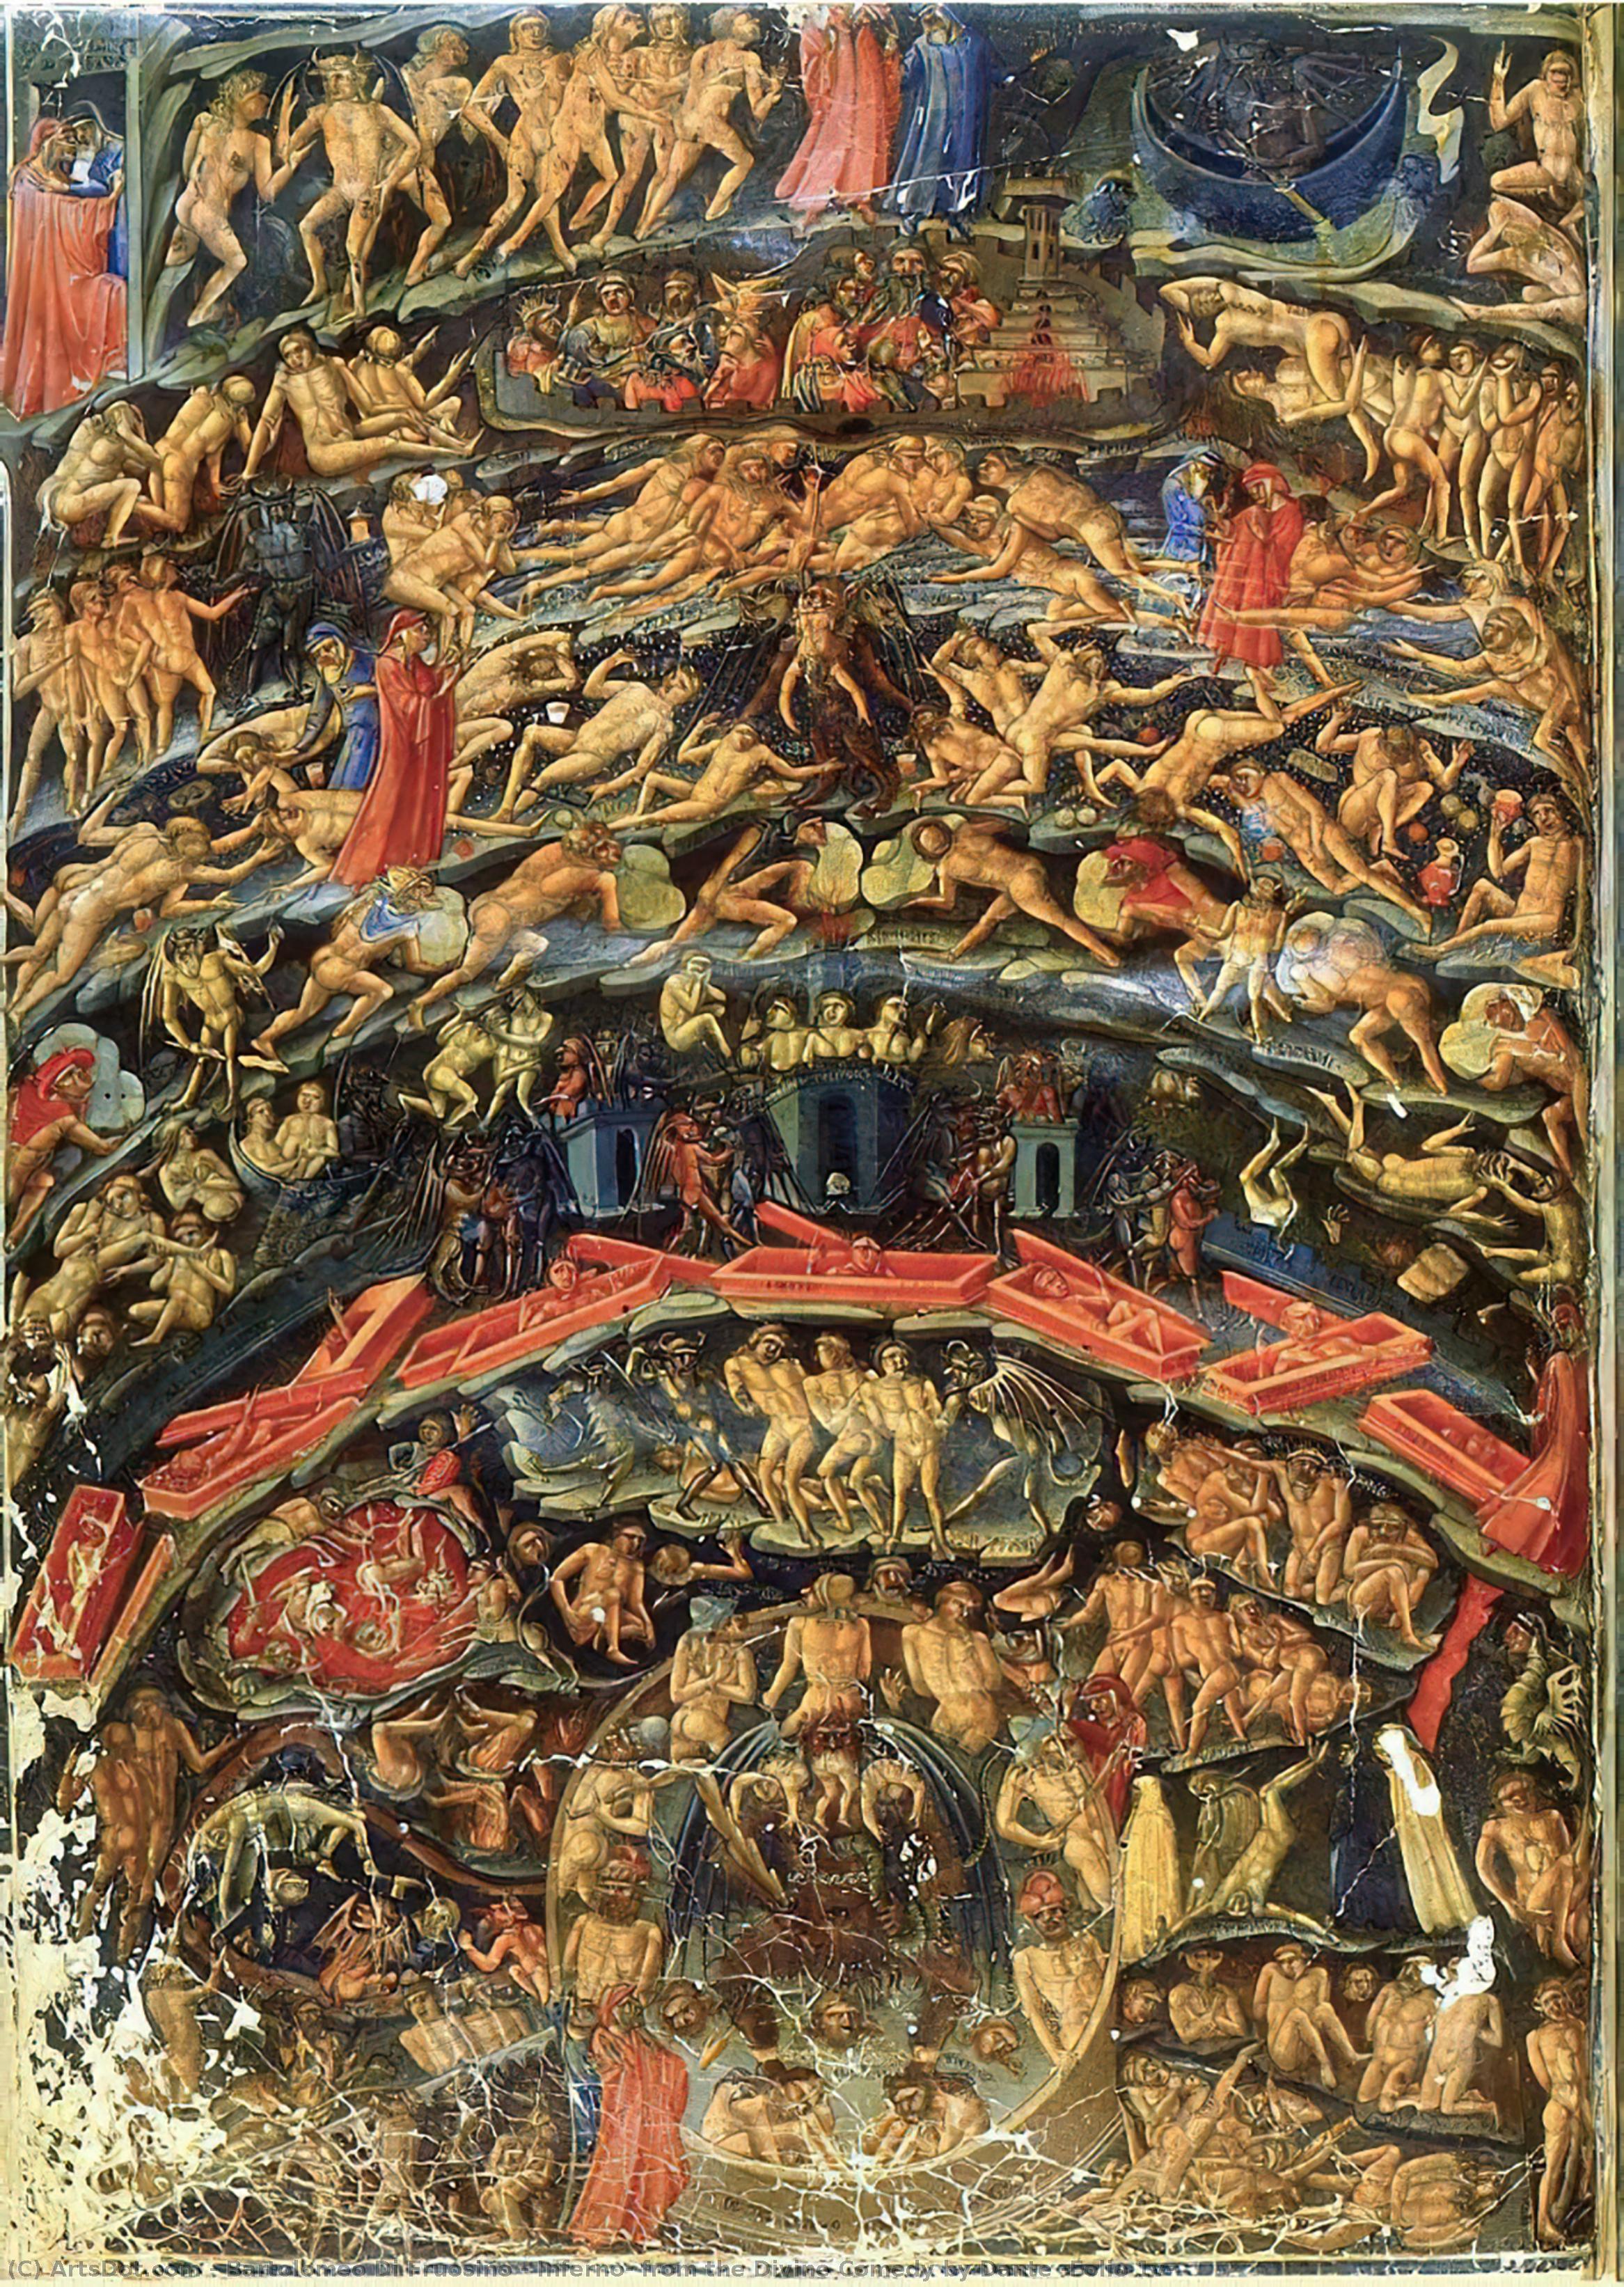 Compra Riproduzioni D'arte Del Museo Inferno, dalla Divina Commedia di Dante (Folio 1v), 1430 di Bartolomeo Di Fruosino (1366-1441, Italy) | ArtsDot.com